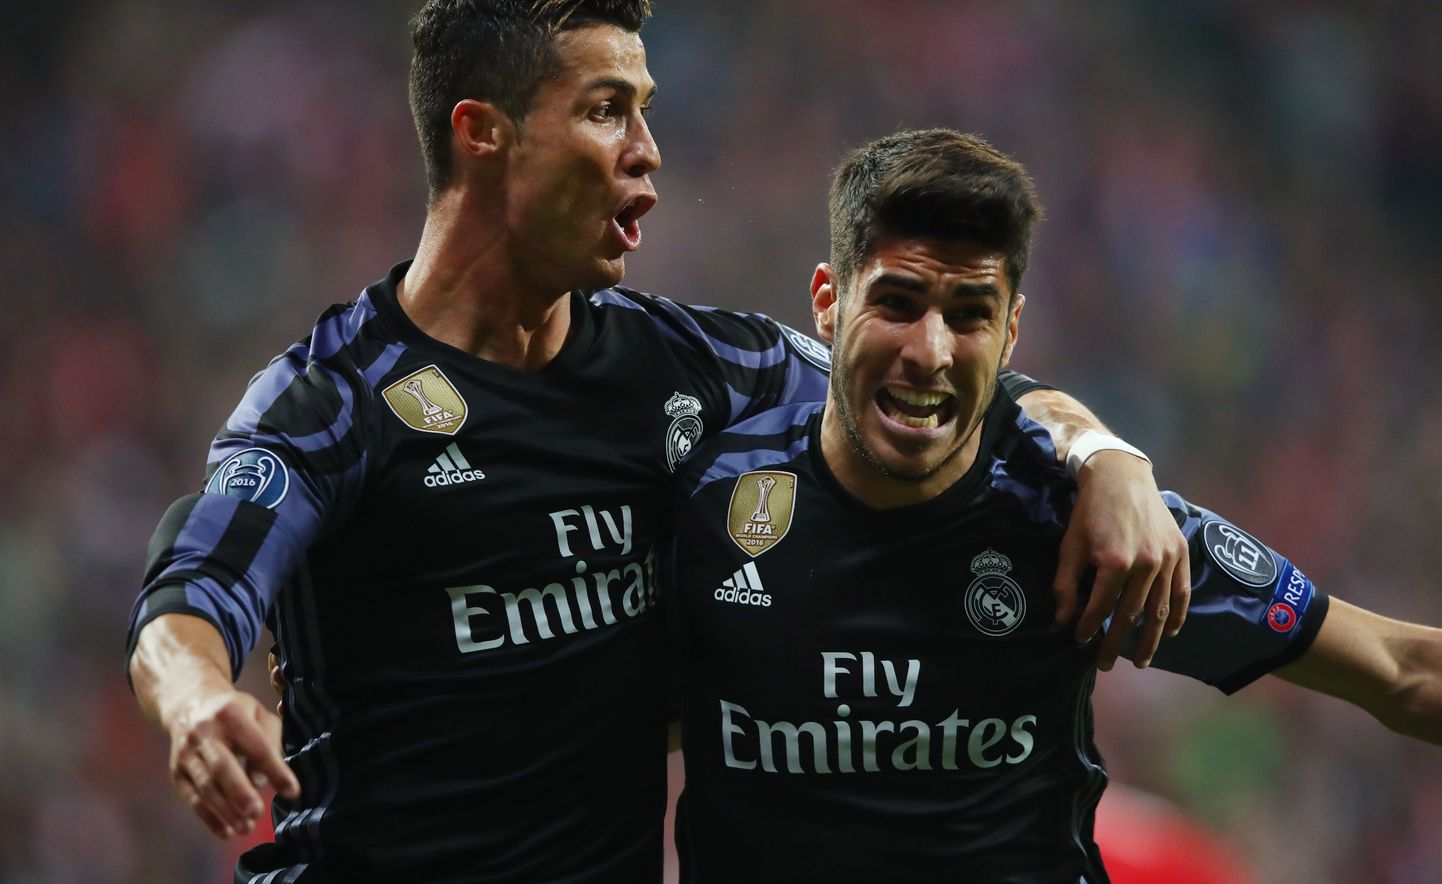 Kas Marco Asensiost (paremal) saab Cristiano Ronaldo mantlipärija Madridi Realis?